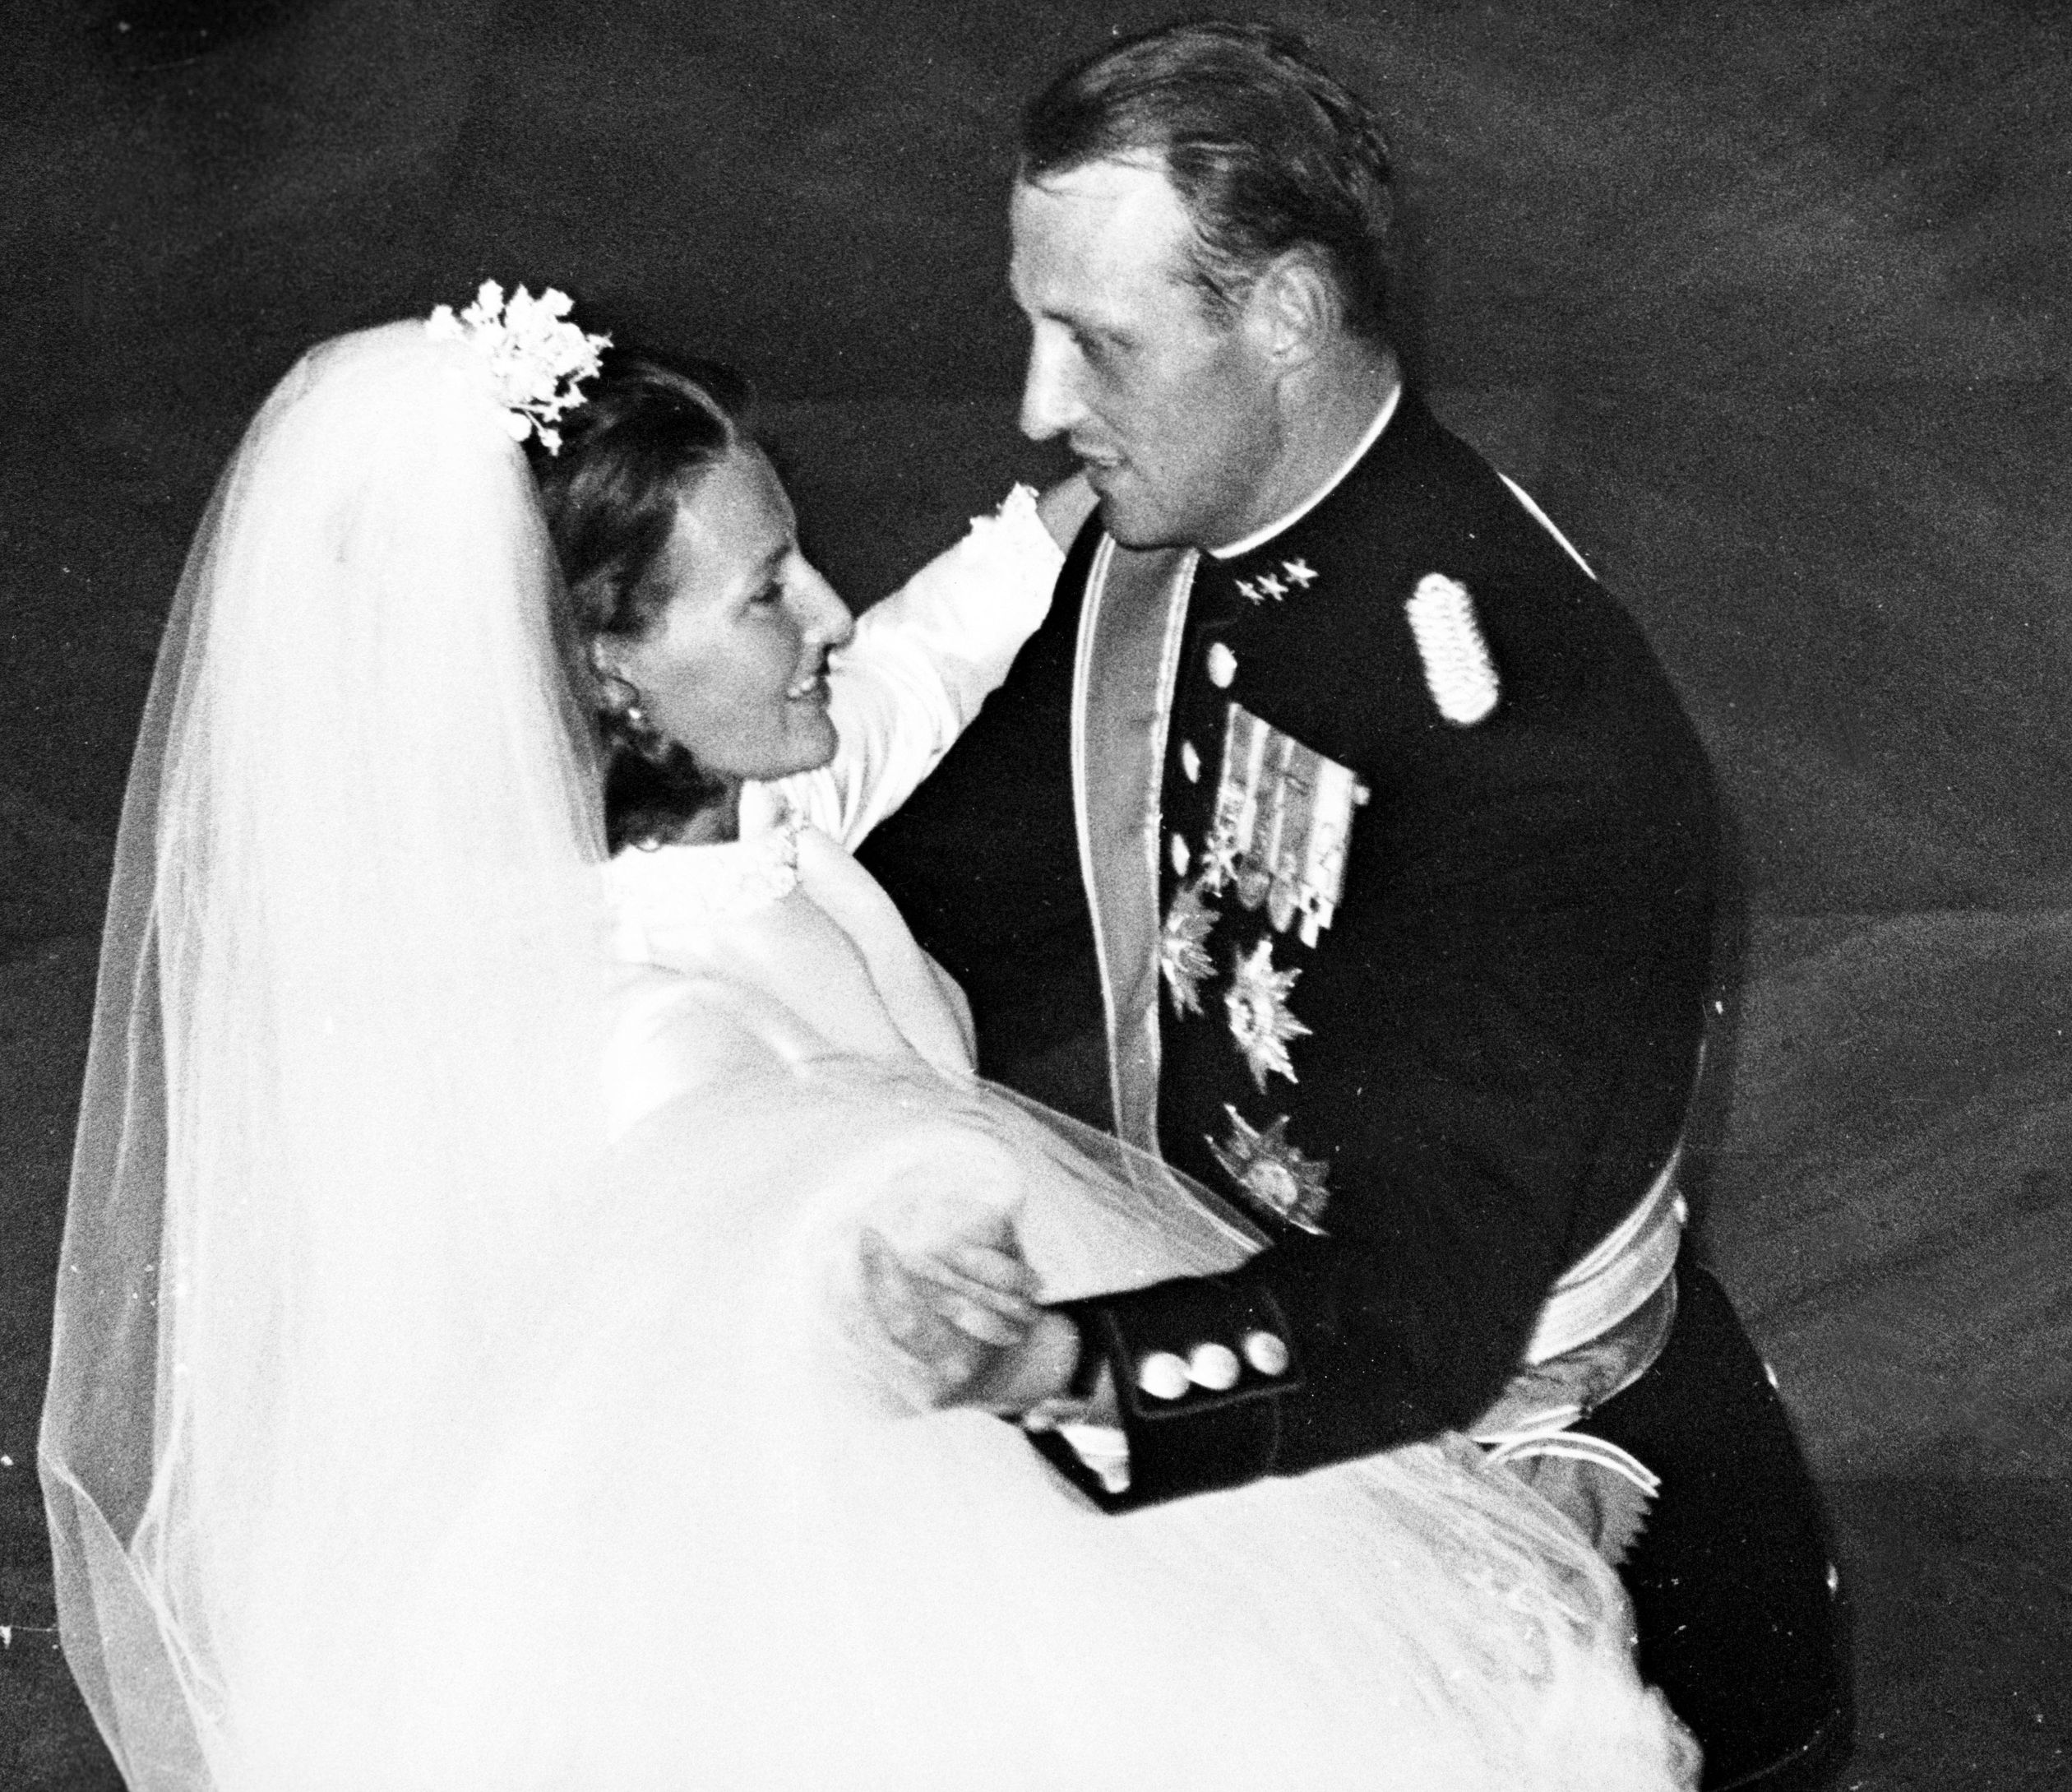 Kroonprins Harald met Sonja in 1968.